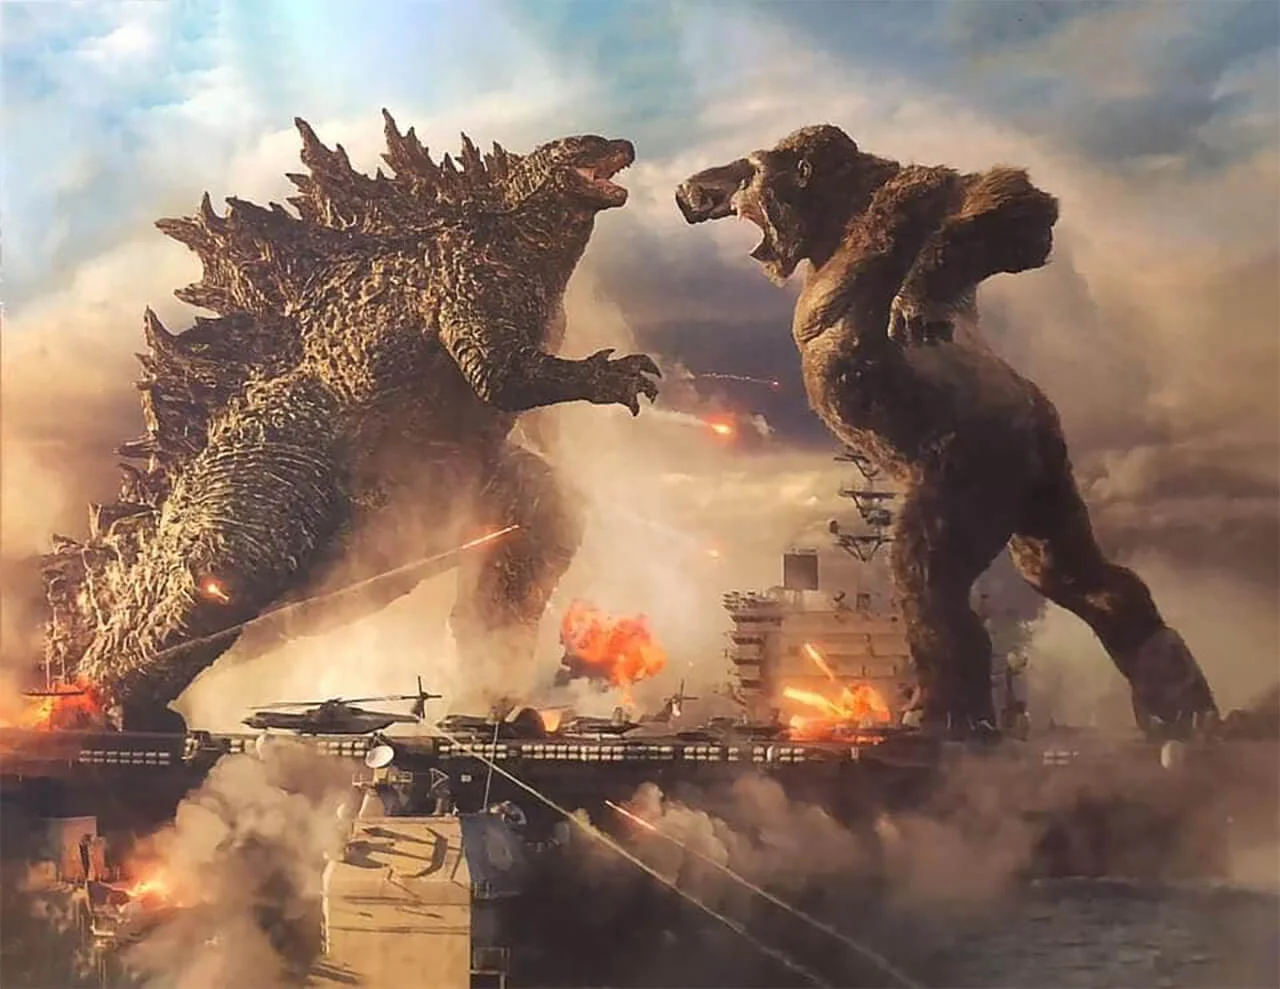 A Legendary csak 250M dollárért engedi át a Godzilla vs. Kong terjesztési jogát az HBO Maxnak